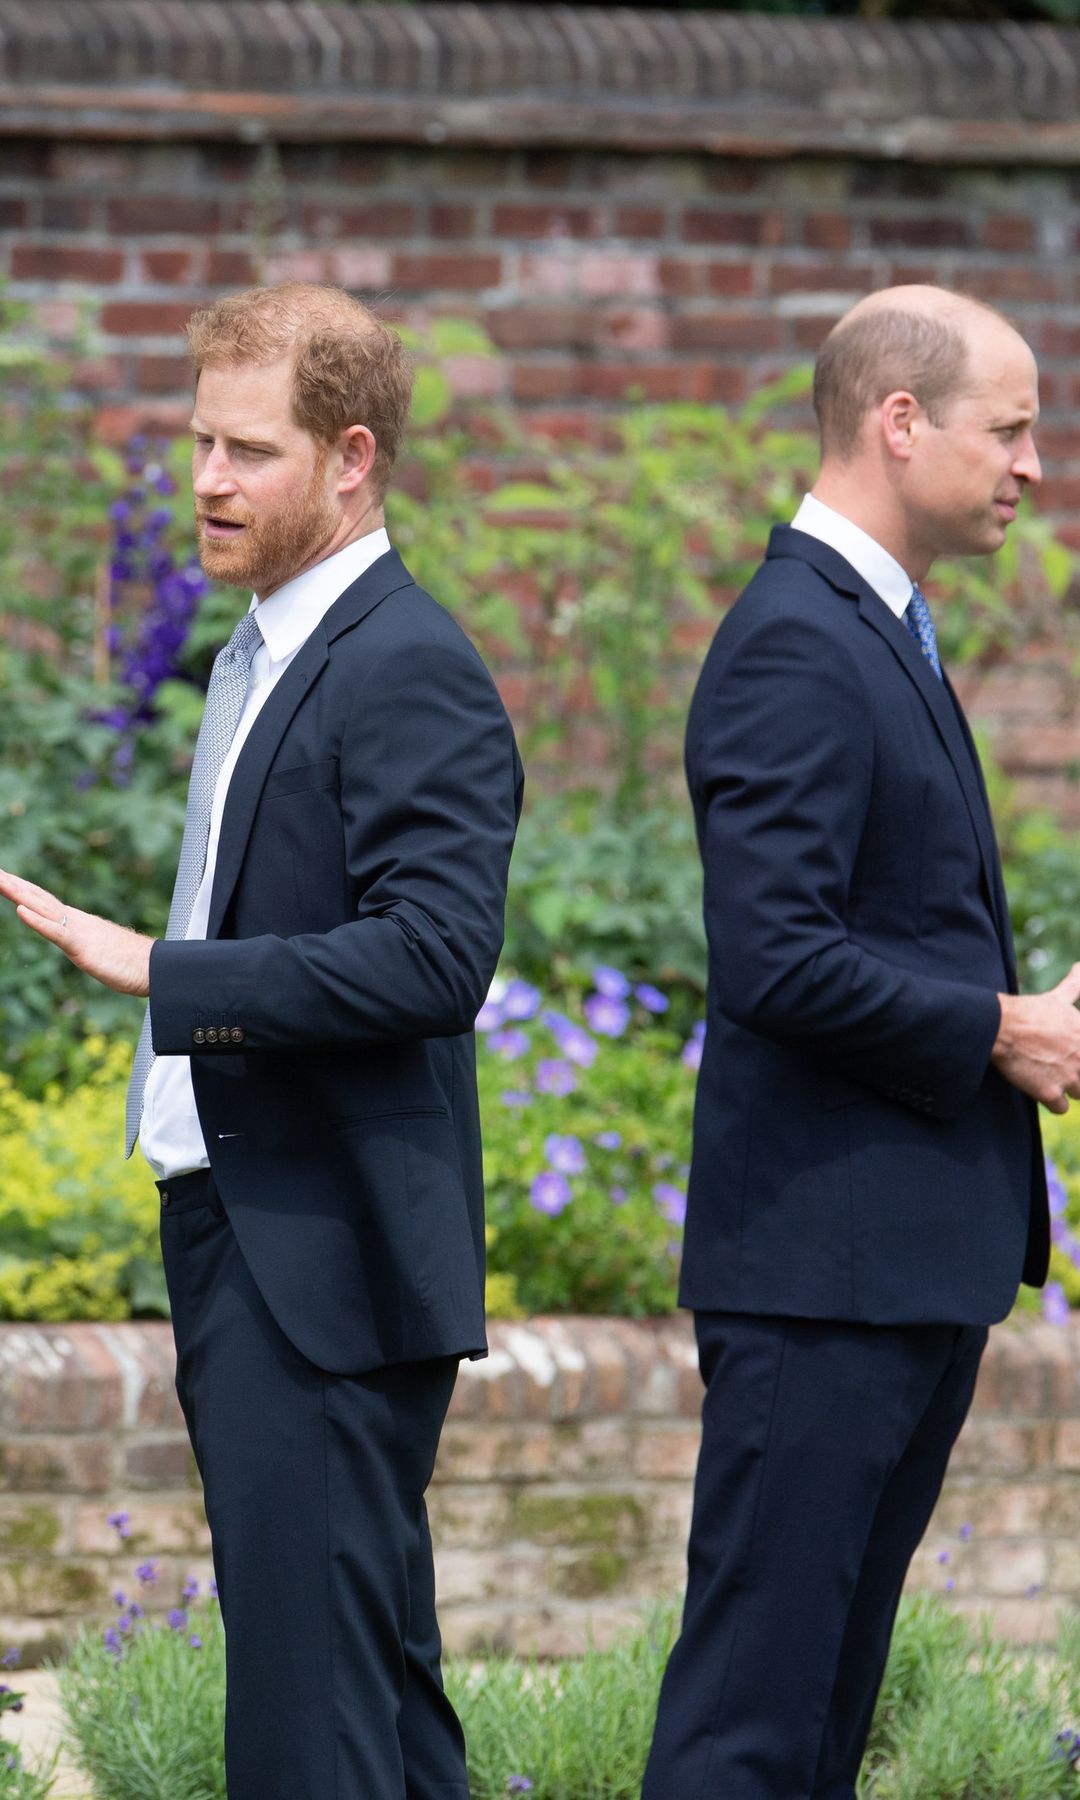 Los príncipes Harry y Guillermo en julio de 2021 en un homenaje a Diana de Gales, entonces, Harry ya había salido de la Casa Real británica y la relación entre ellos estaba rota